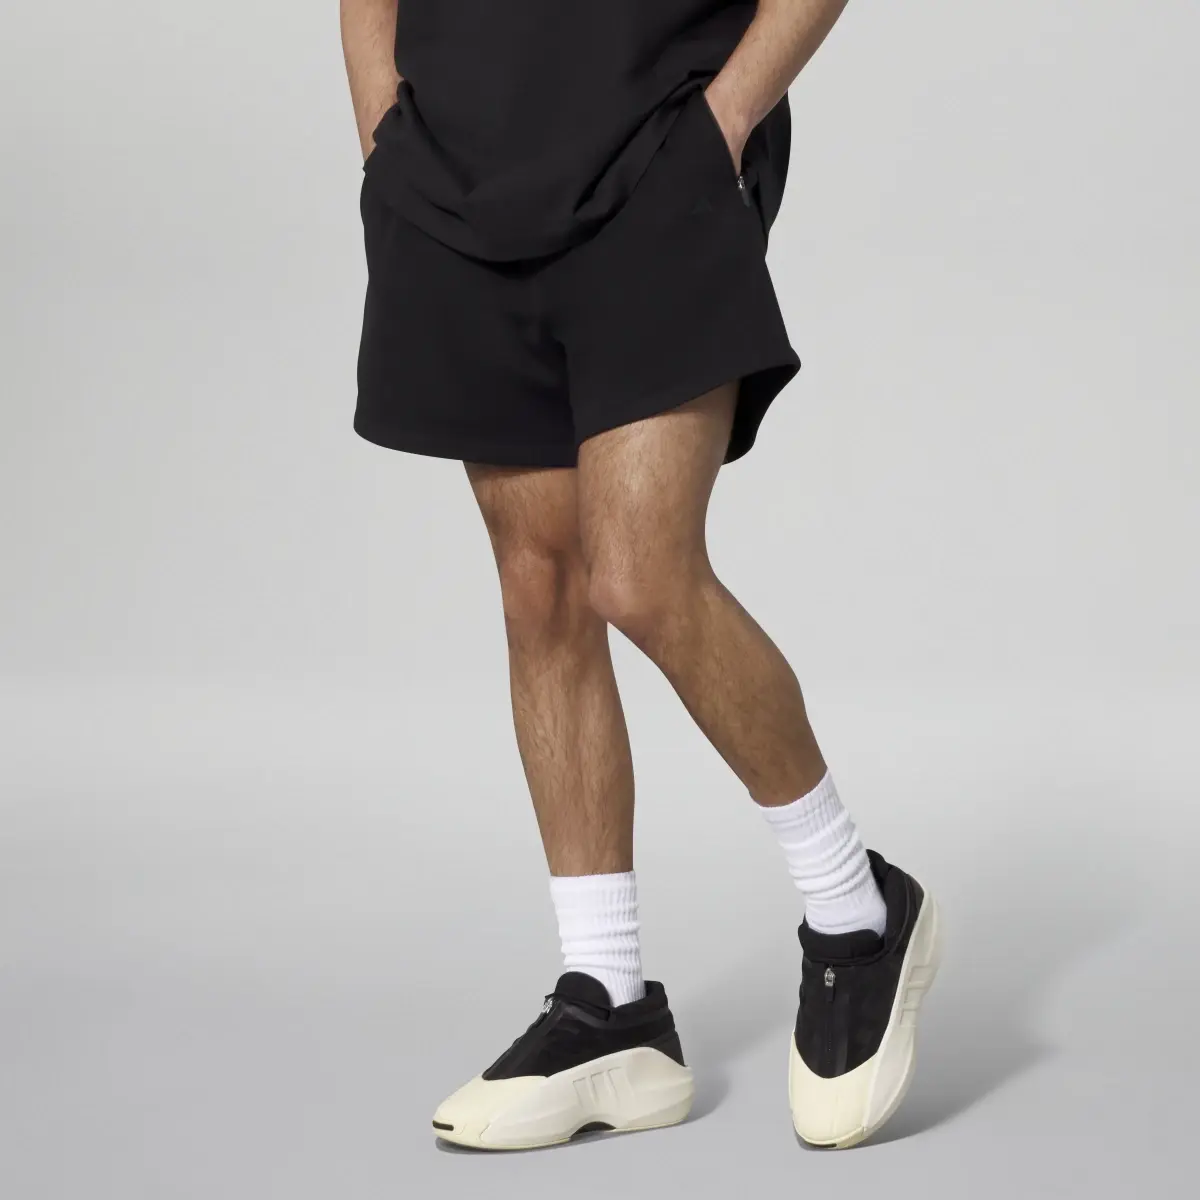 Adidas Basketball Shorts. 3